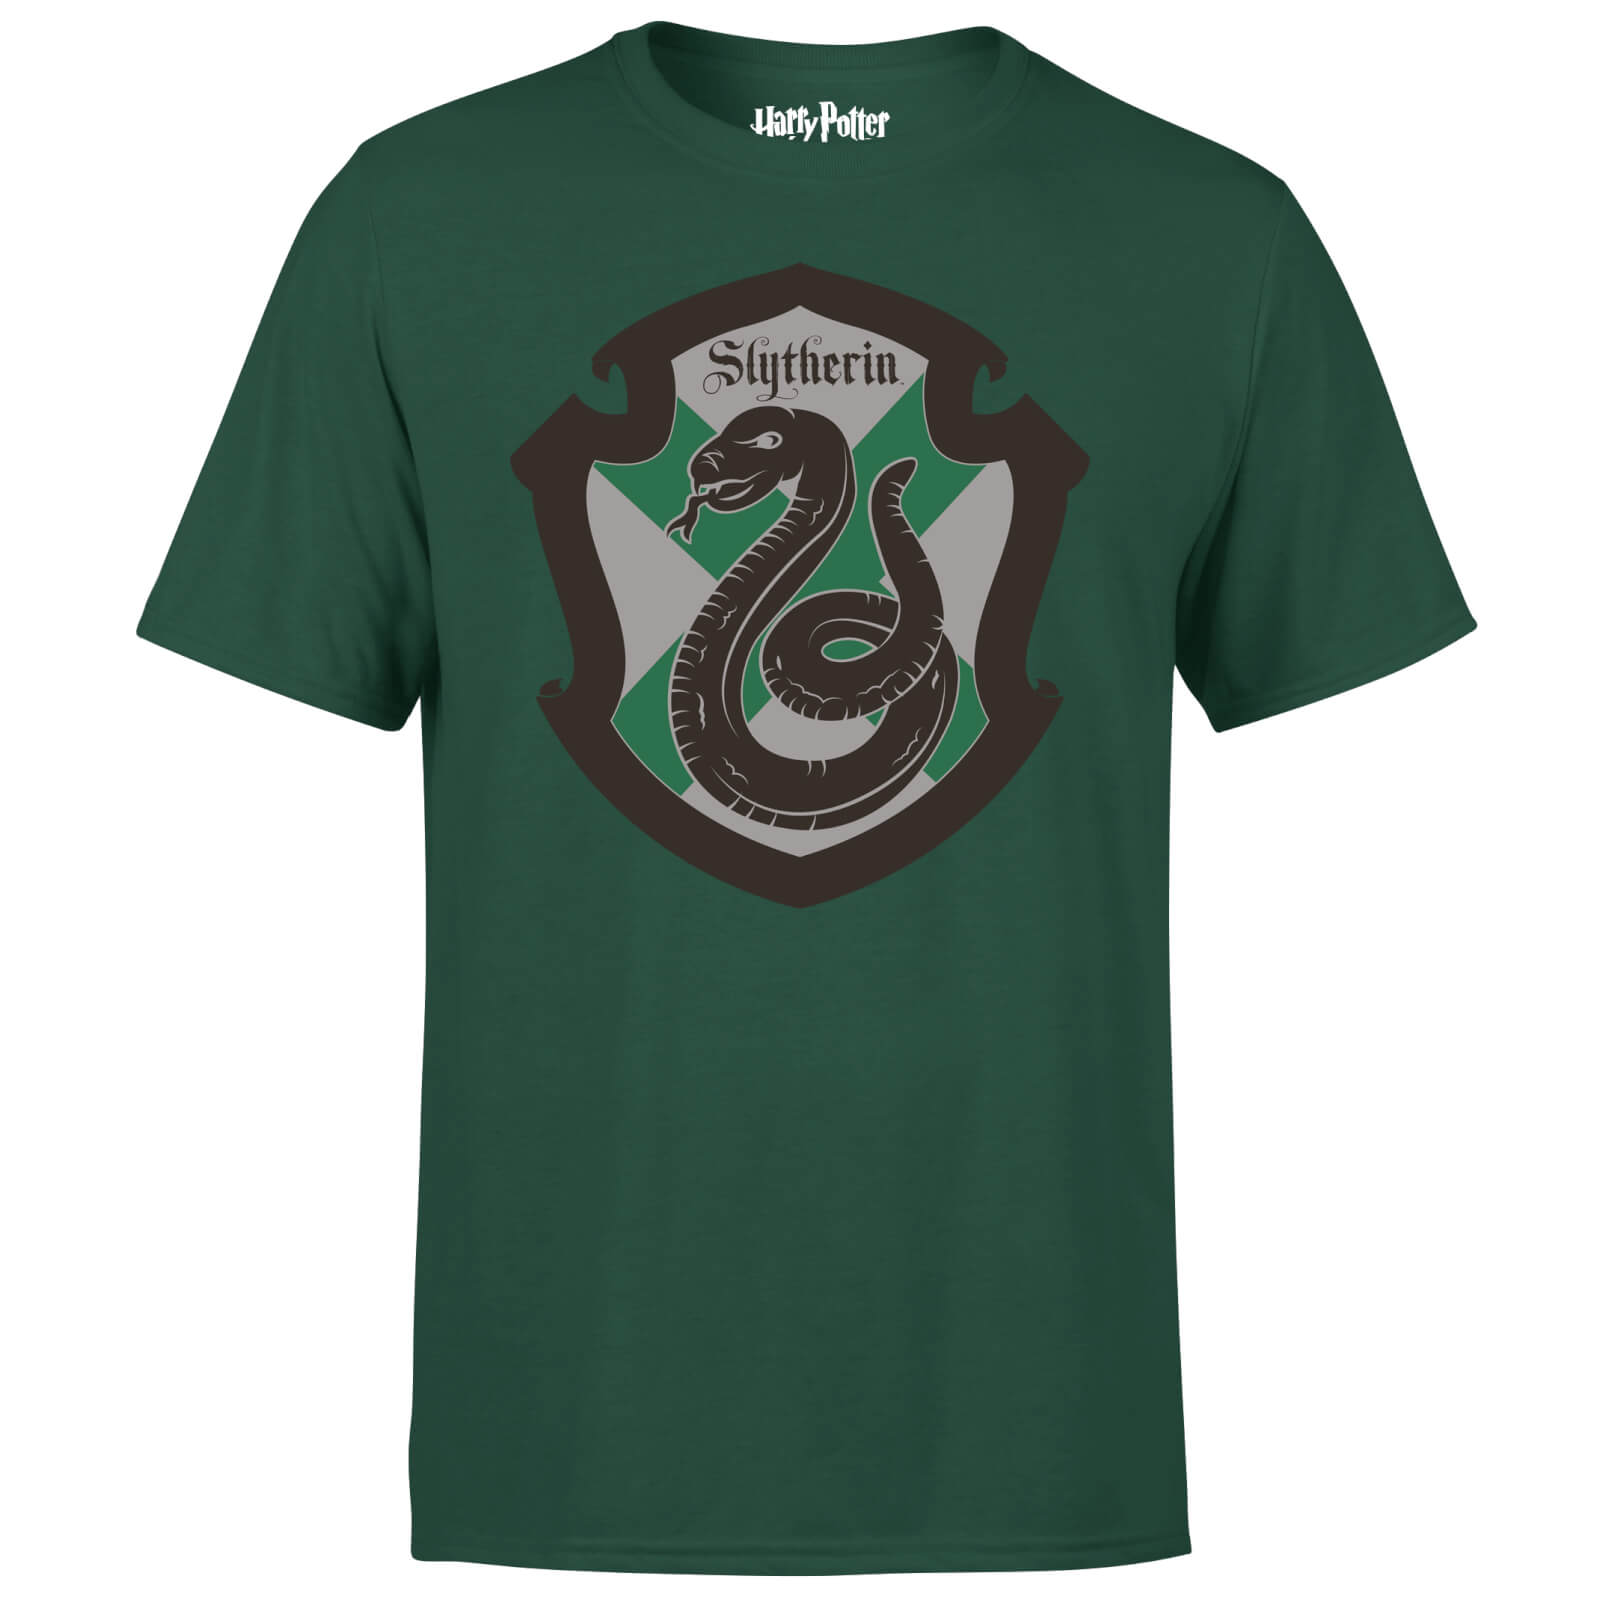 Harry Potter Slytherin House T-Shirt - Grün - M